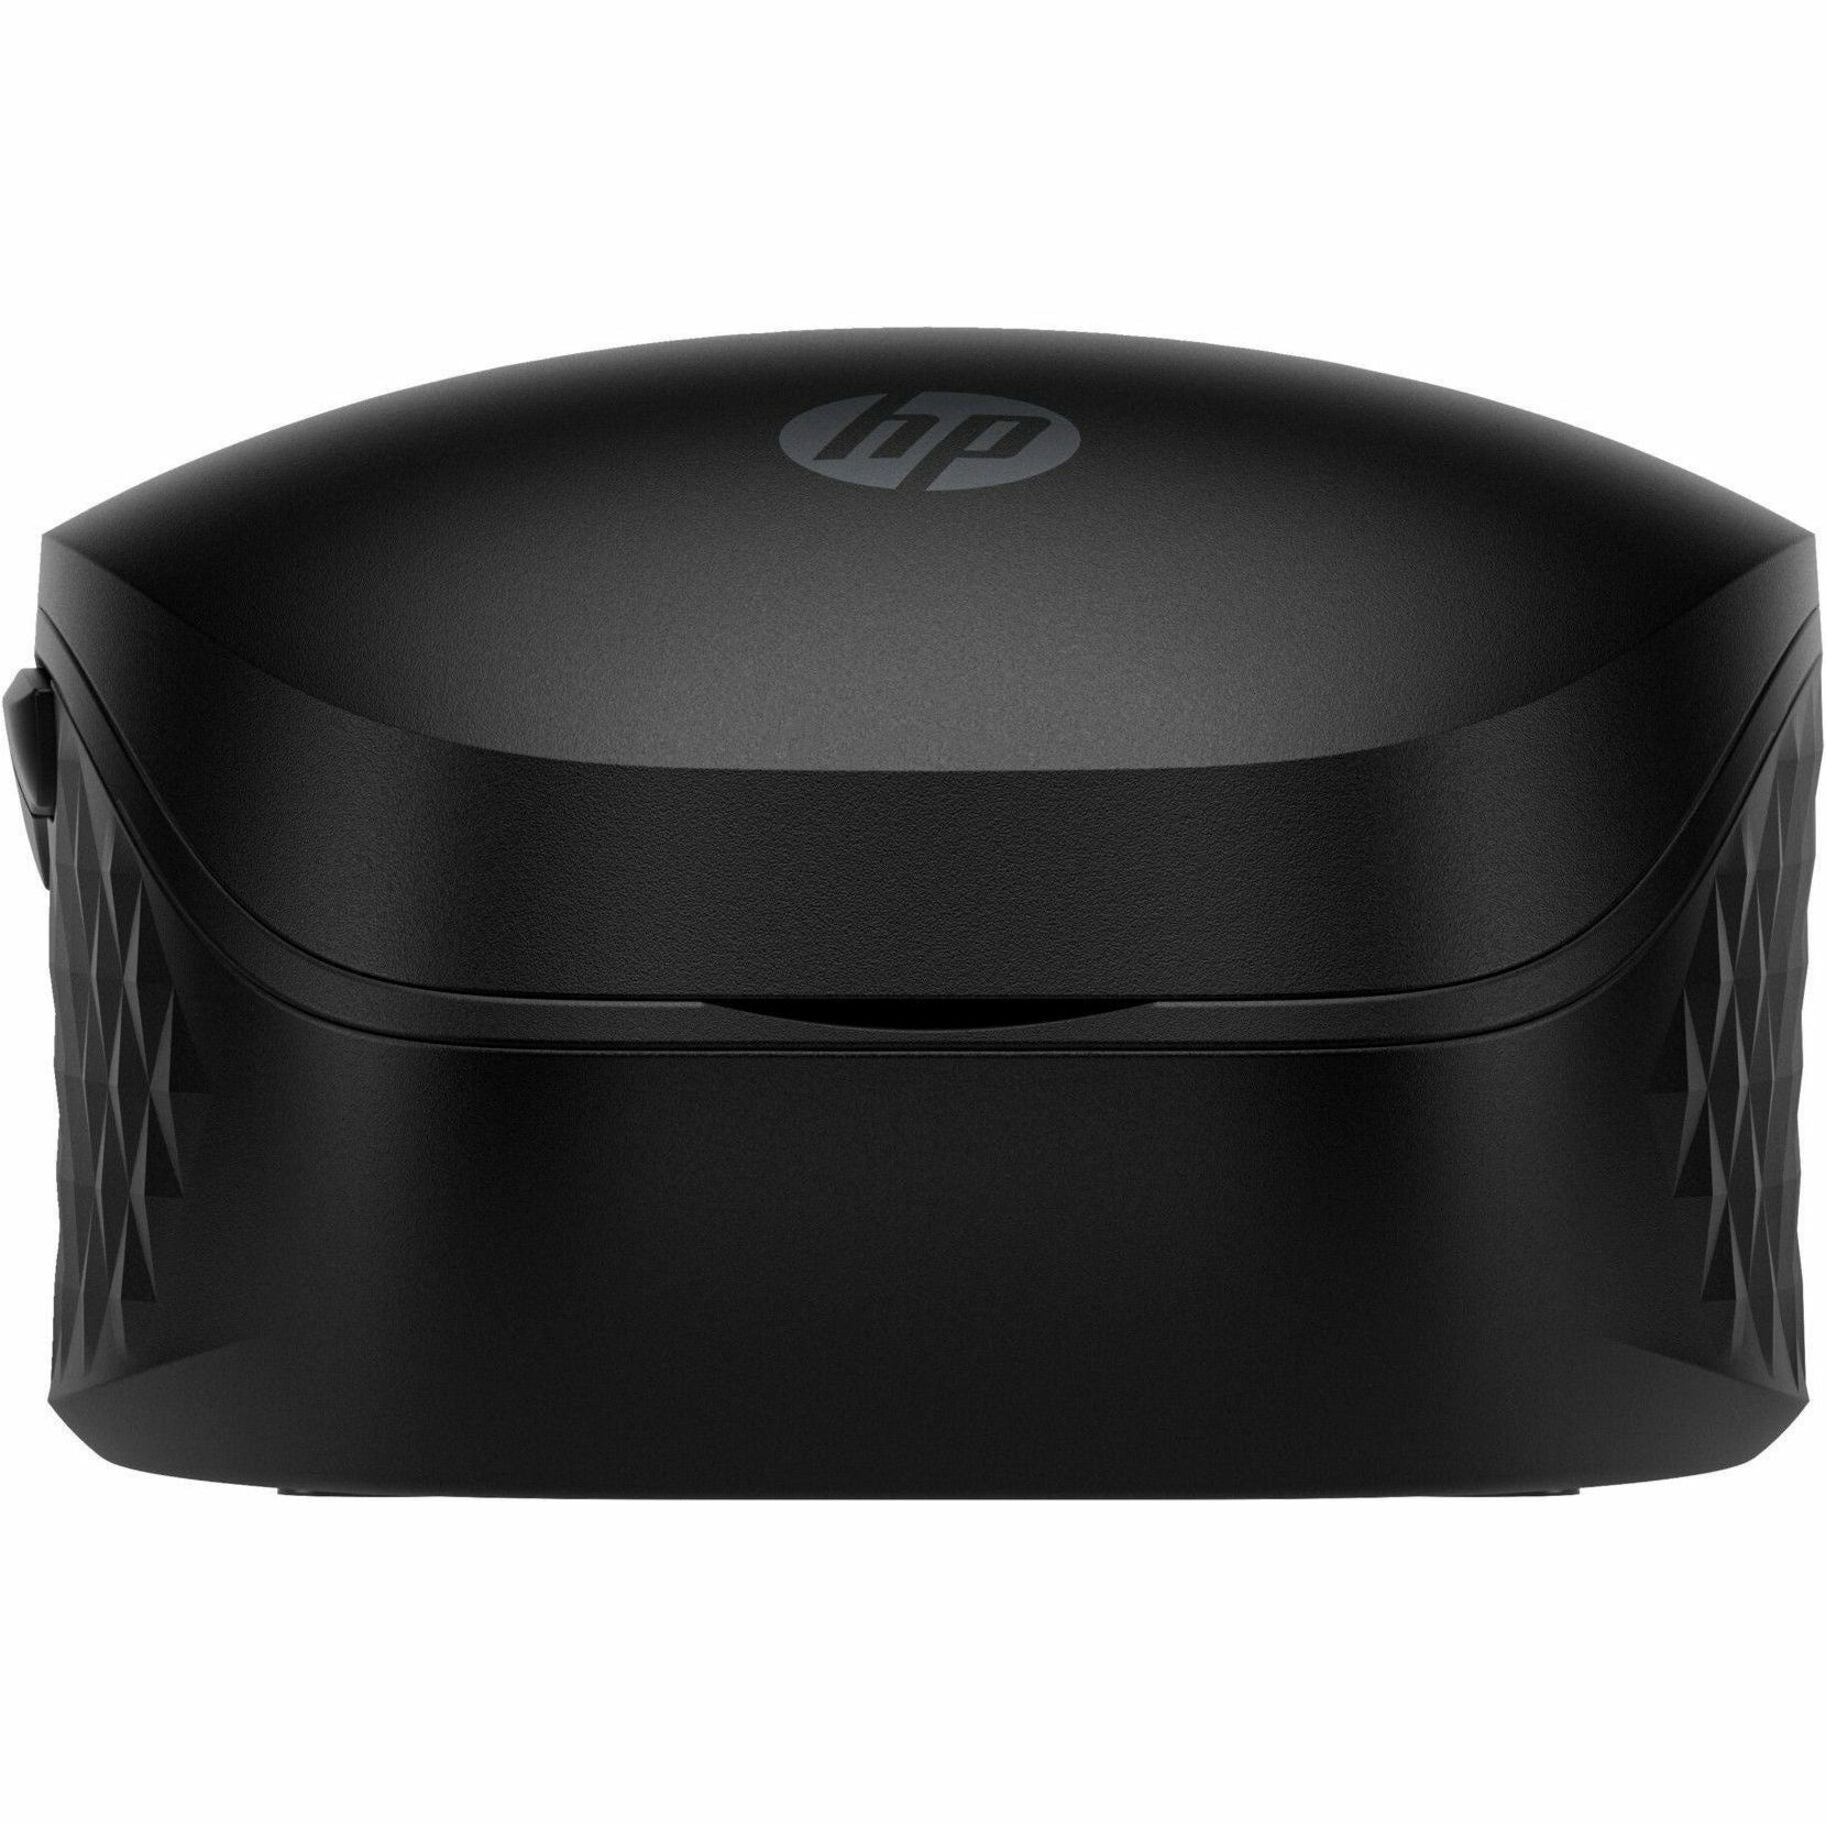 HP 425 Mouse, Wireless Bluetooth 7-Button Tilt Wheel, 4000 dpi